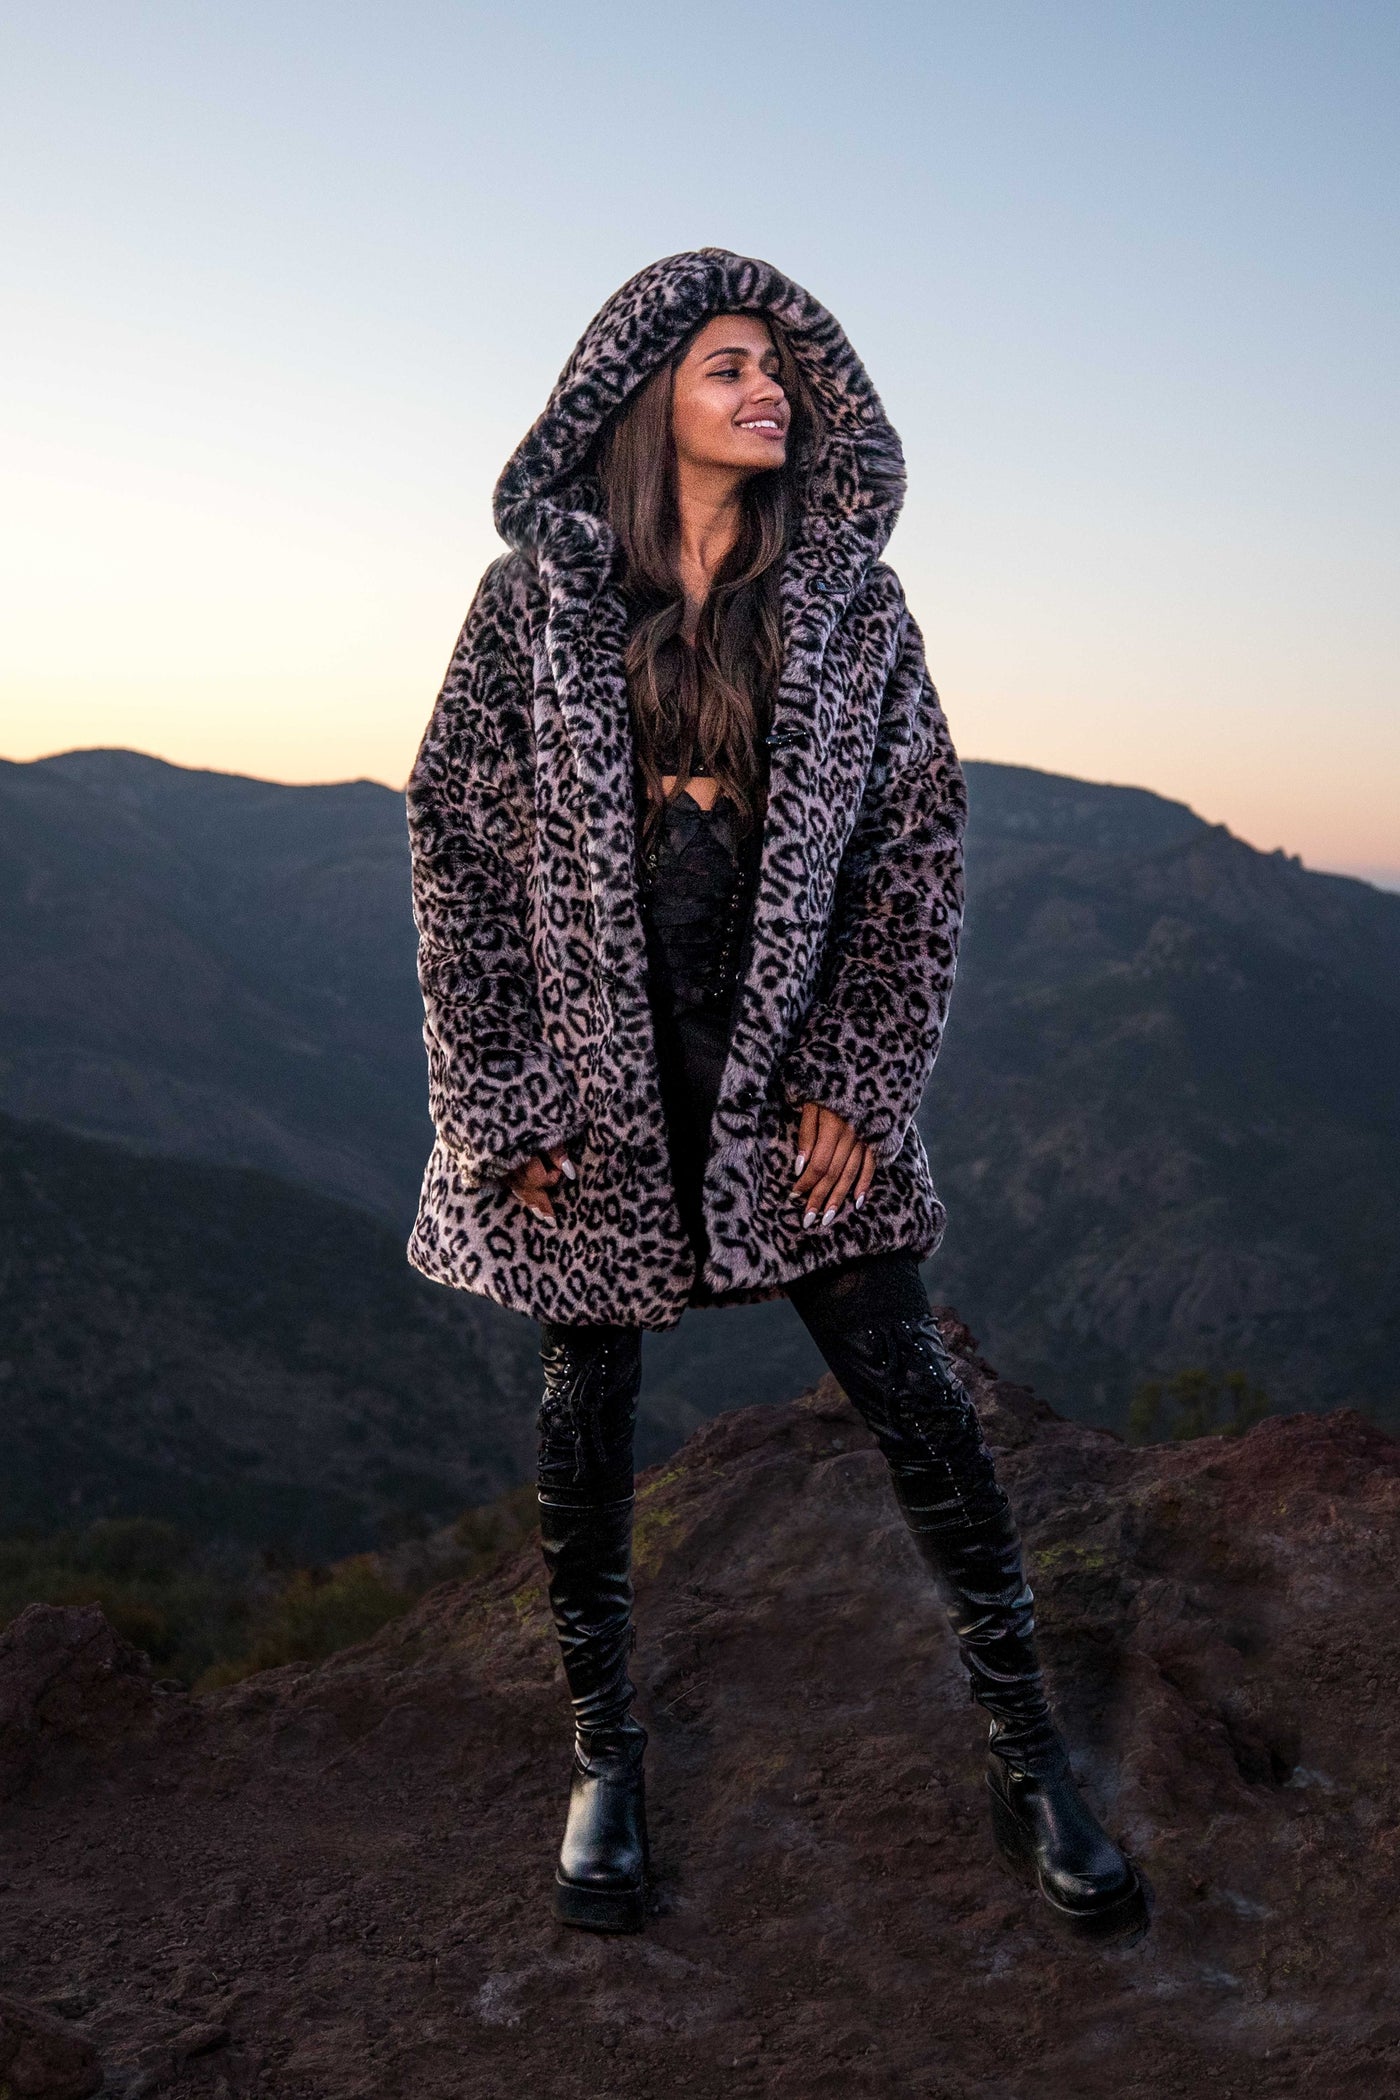 Women's Short Desert Warrior Coat in "Luxe Leopard" Chinchilla